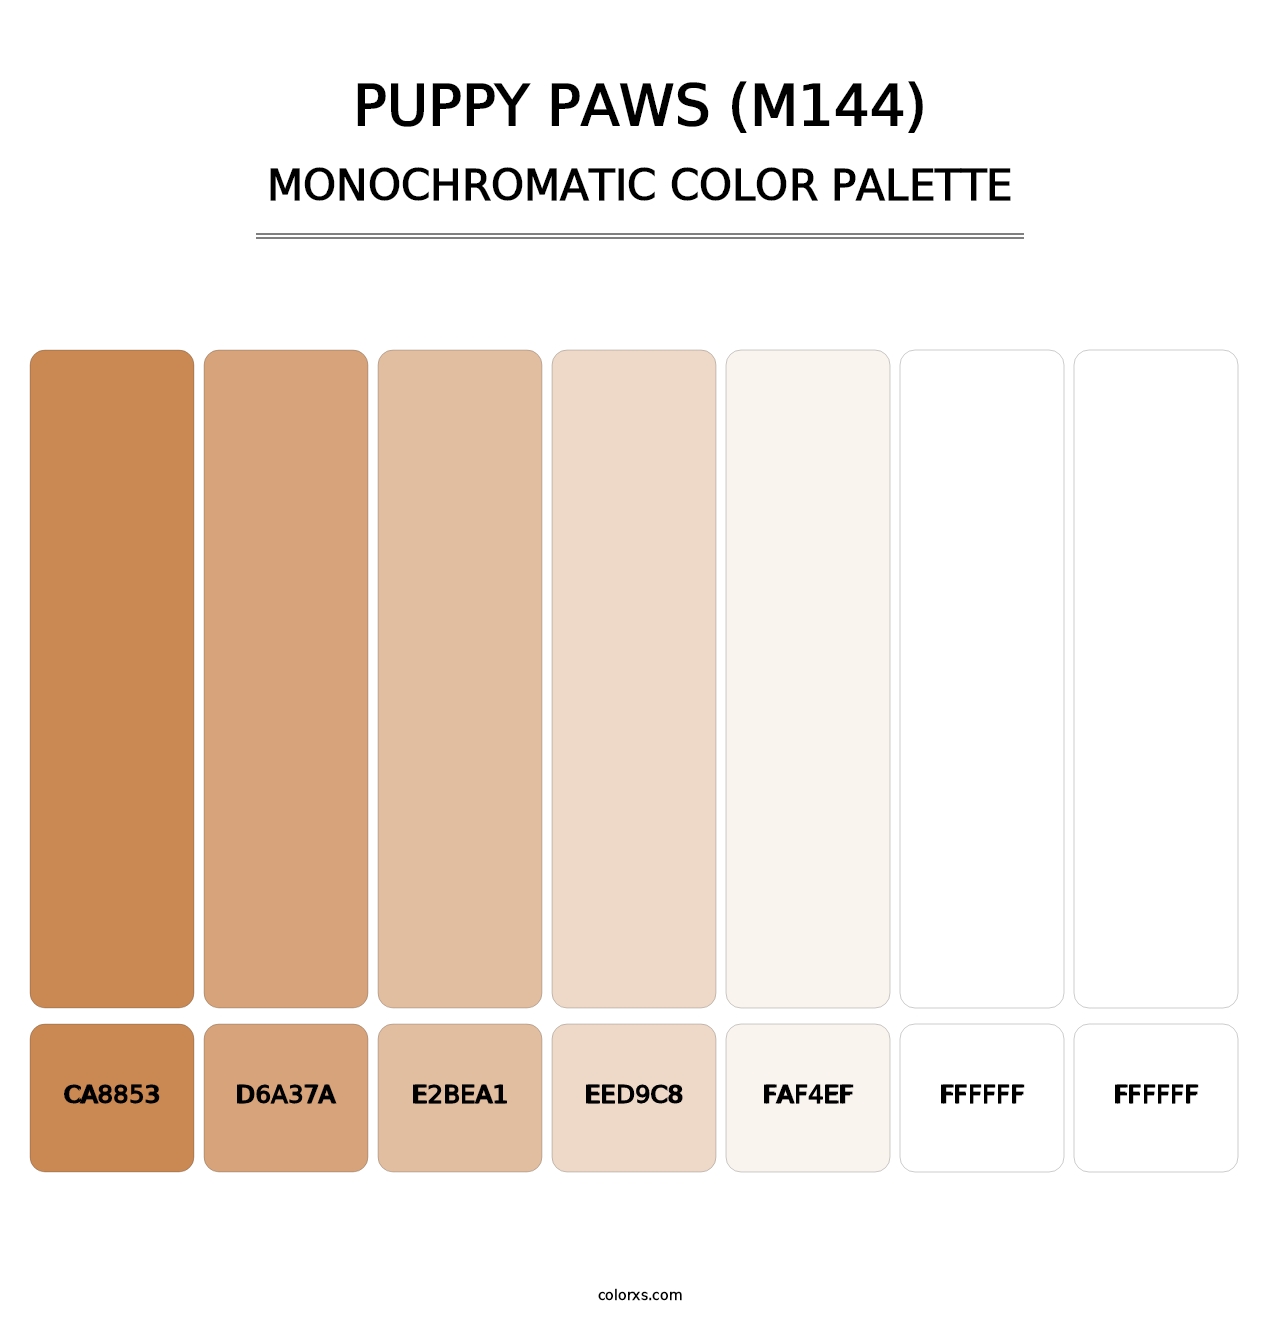 Puppy Paws (M144) - Monochromatic Color Palette